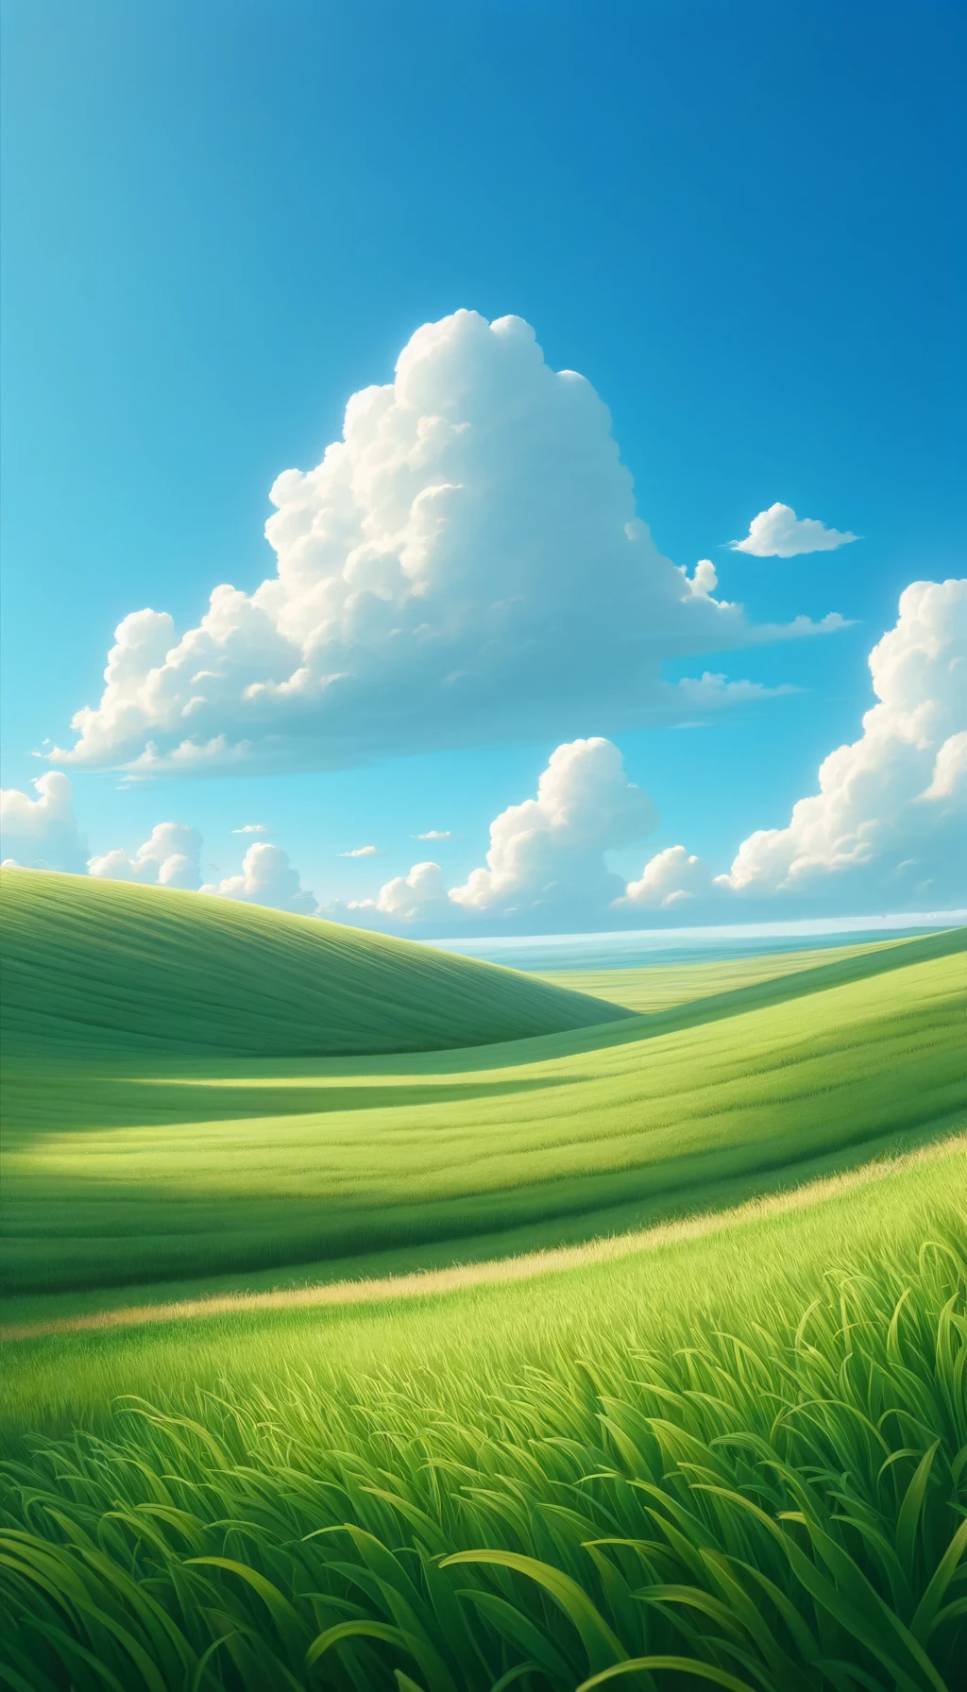 ทุ่งหญ้า ก้อนเมฆ ท้องฟ้า ธรรมชาติสวยงาม สำหรับใส่เป็น background ภาพพื้นหลังมือถือ